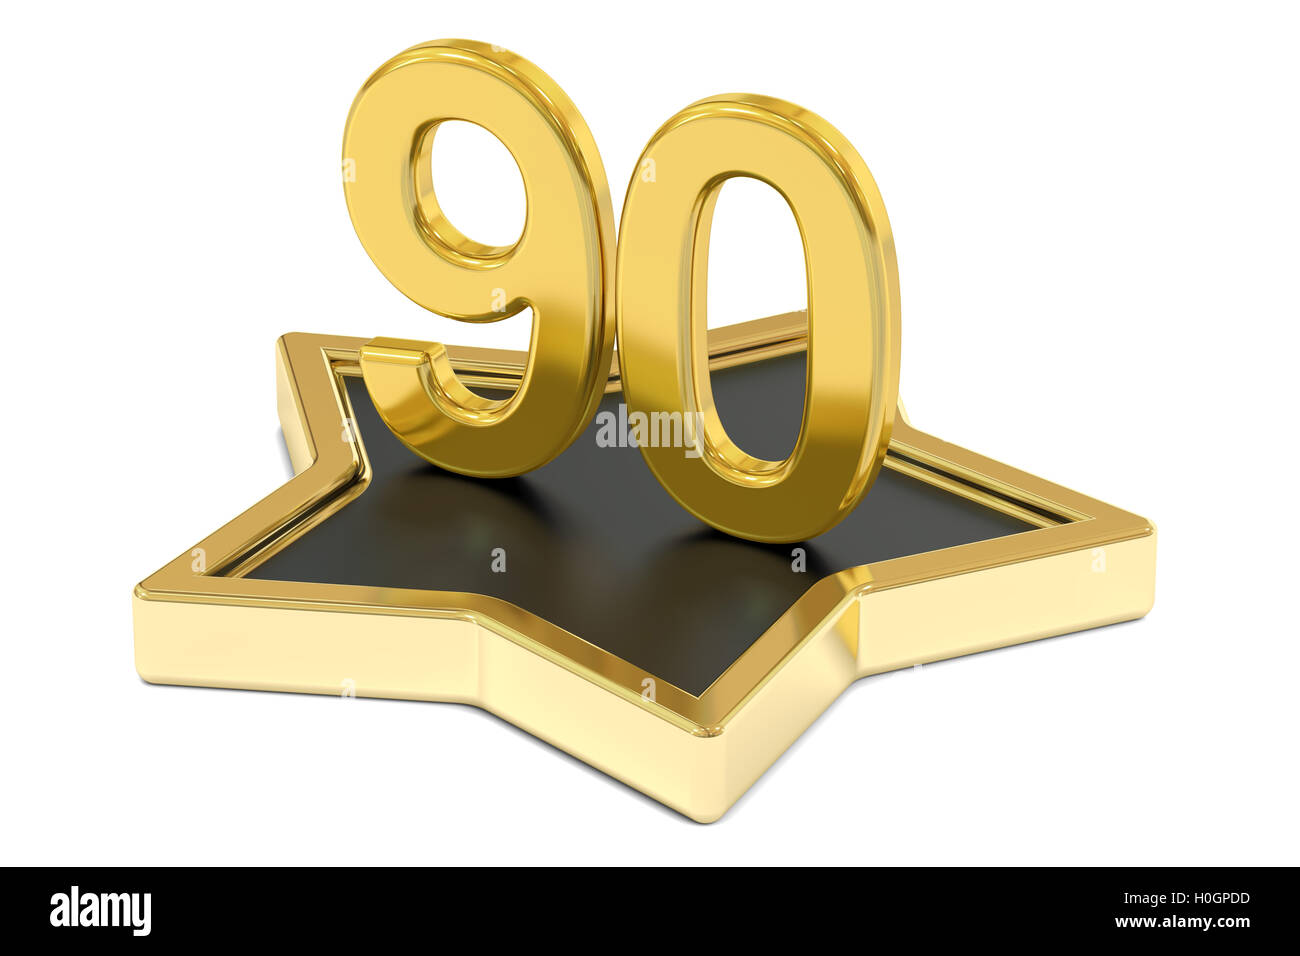 nombre-d-or-90-etoiles-sur-podium-concept-award-le-rendu-3d-isole-sur-fond-blanc-h0gpdd.jpg